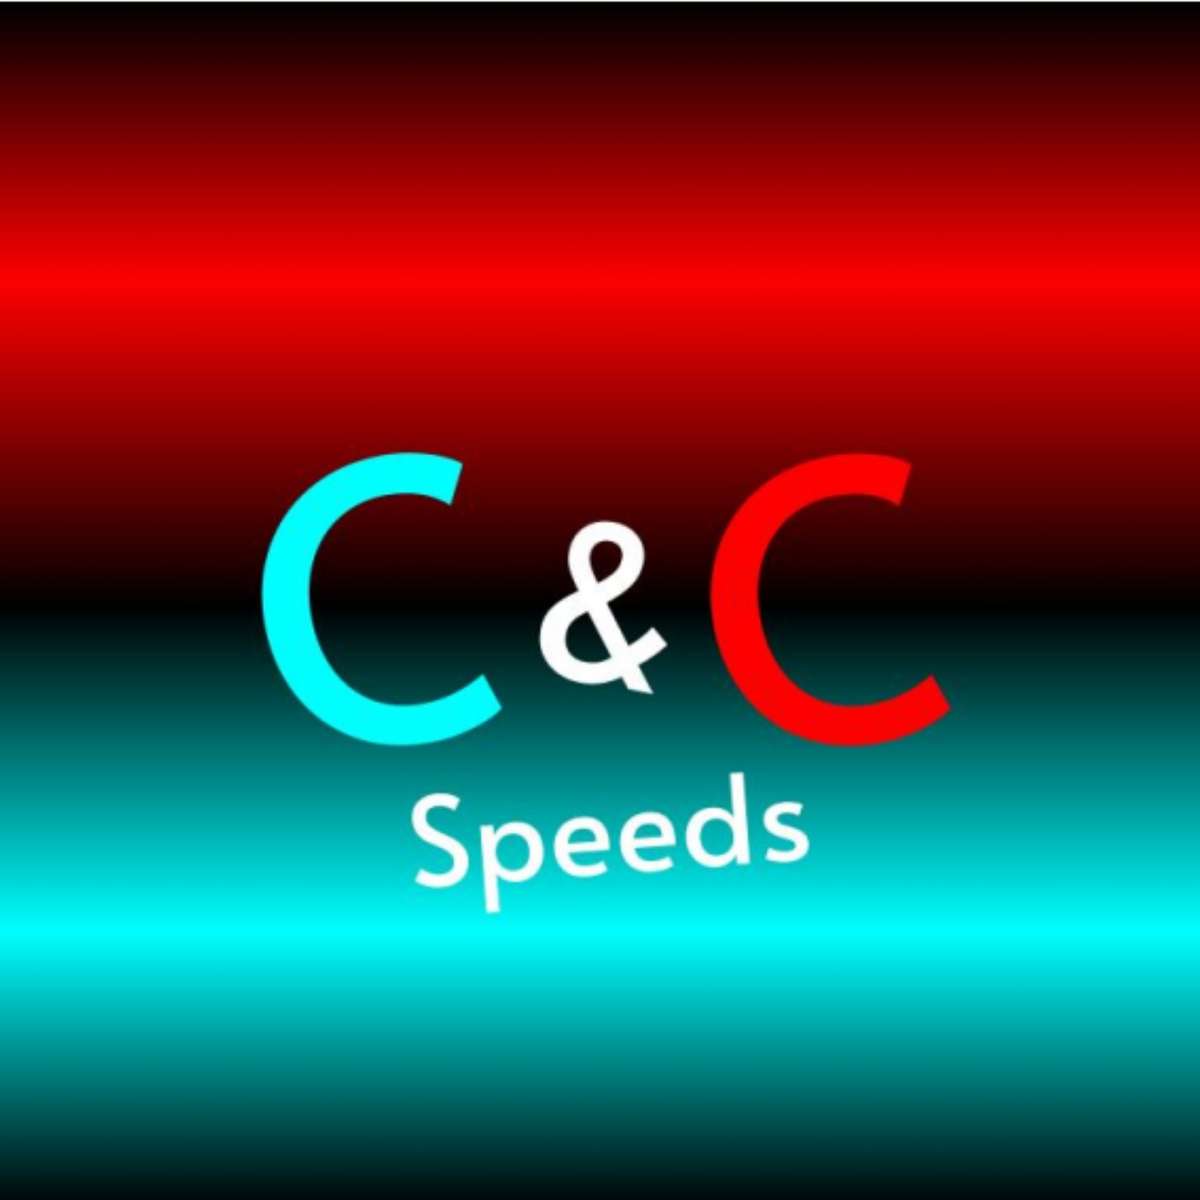 C&C-Geschwindigkeiten Online-Puzzle